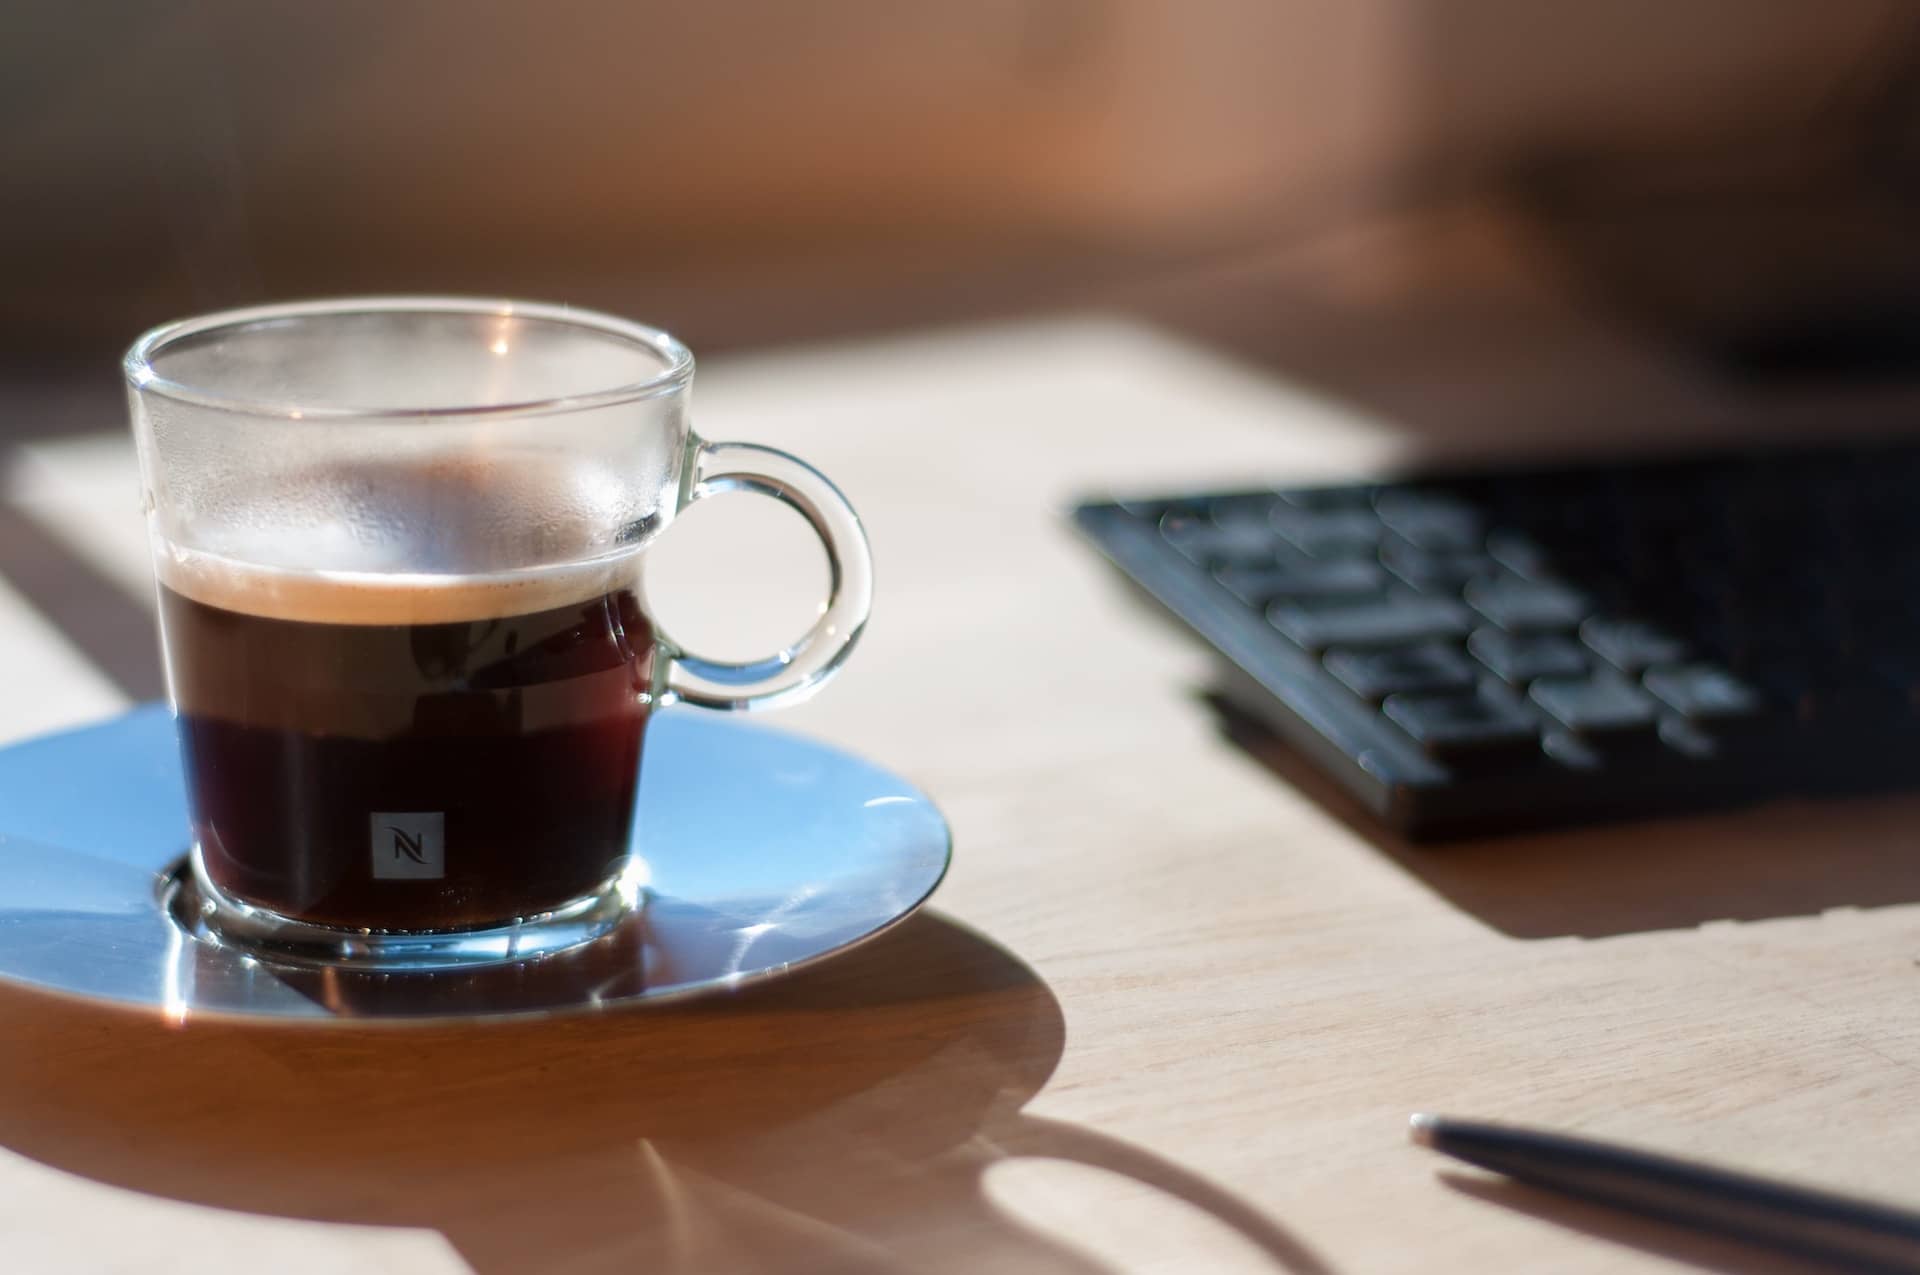 espresso in a small glass cup